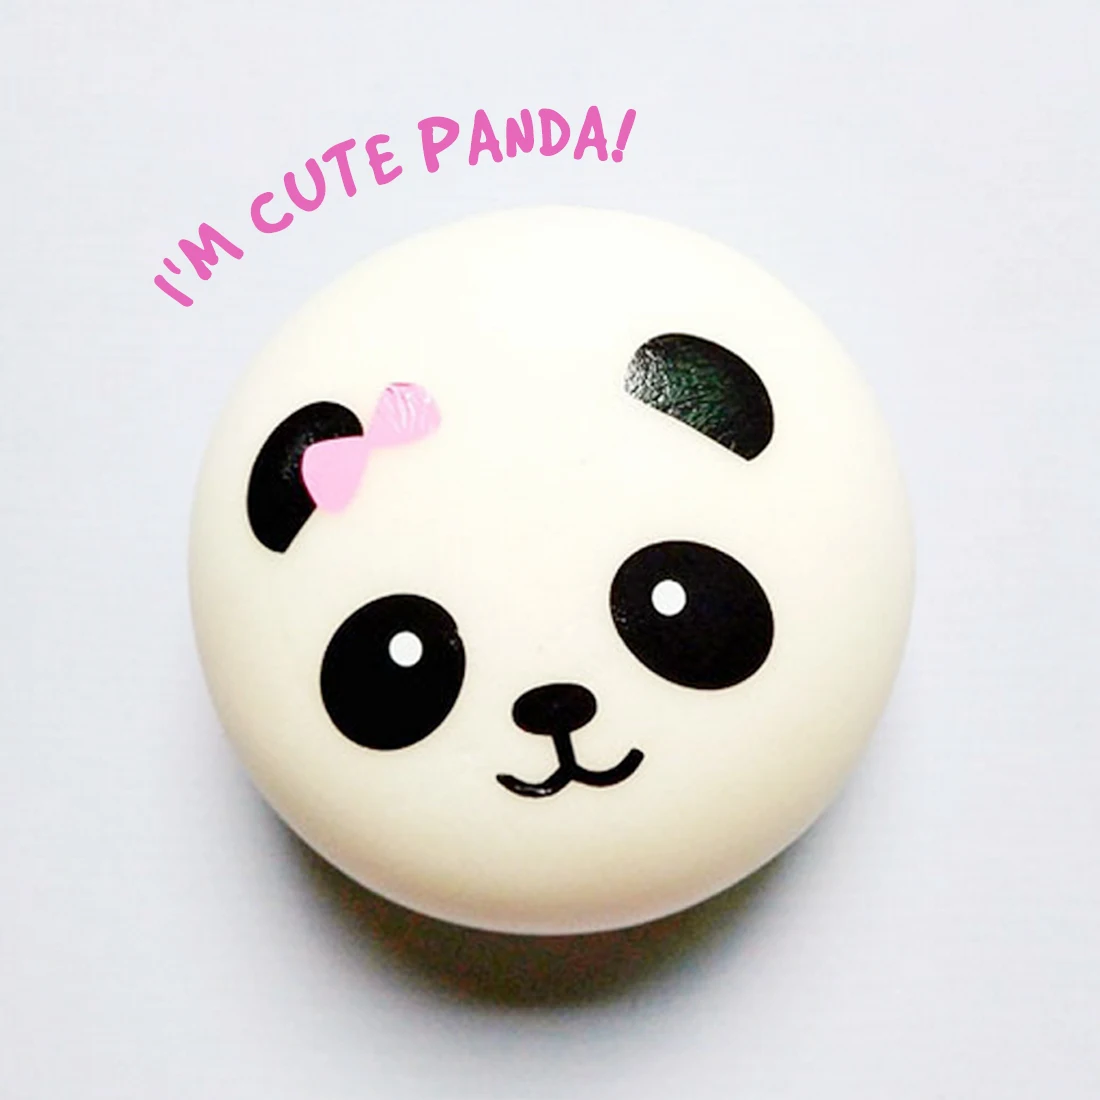 Etmakit 10/7/4 см мягкий медленно поднимающийся Jumbo Panda Squeeze детская забавная игрушка для снятия стресса в стиле мягкими очарование телефон ремень в подарок